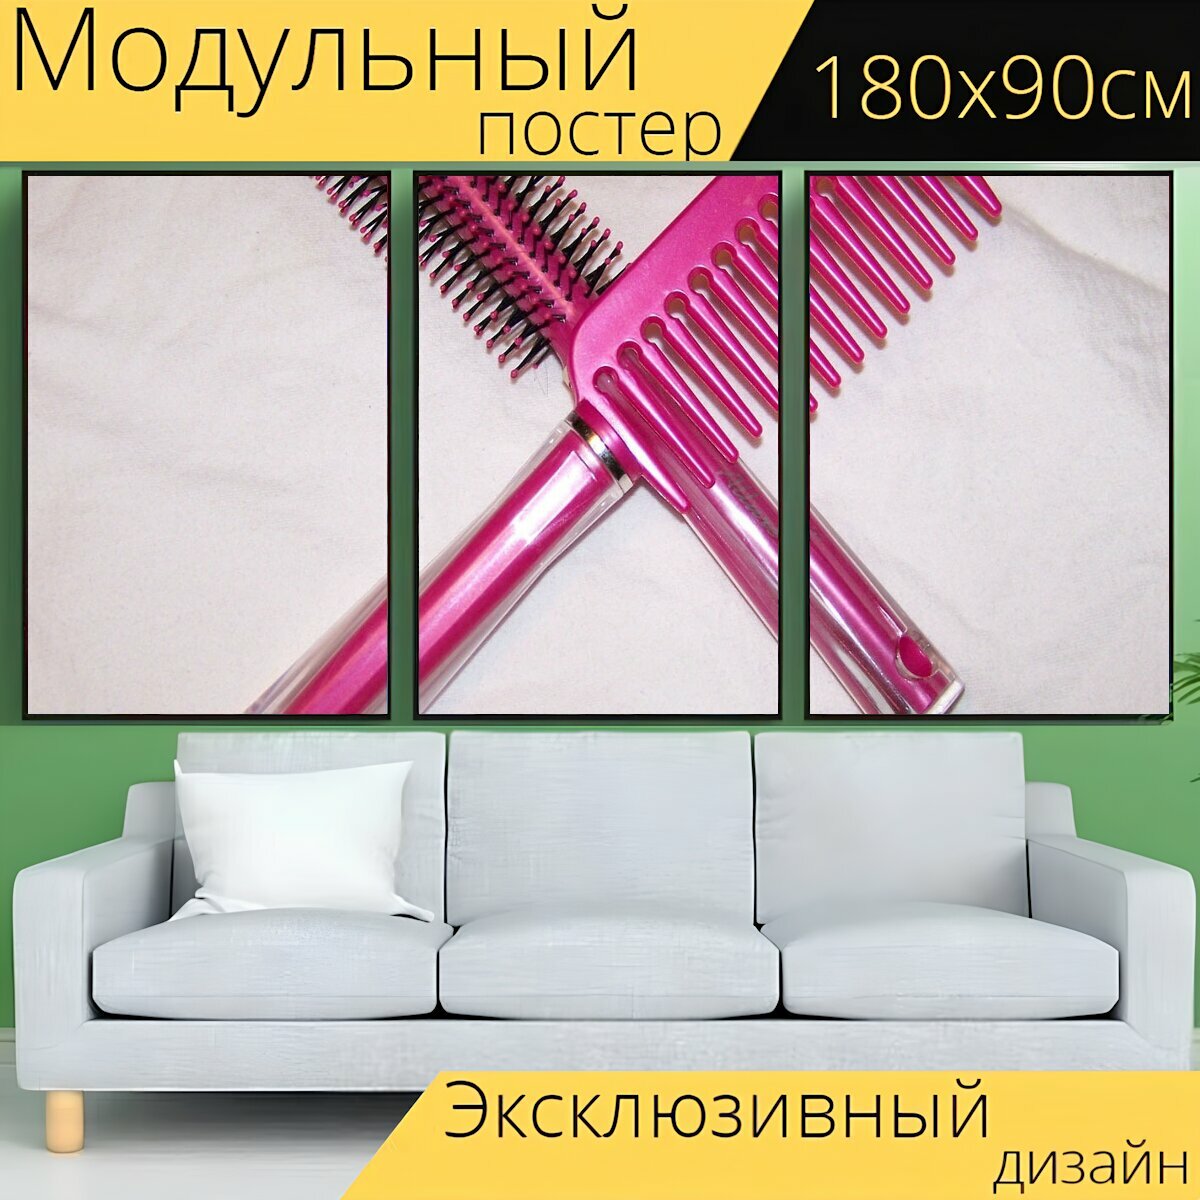 Модульный постер "Гребень, щетка для волос, розовый" 180 x 90 см. для интерьера